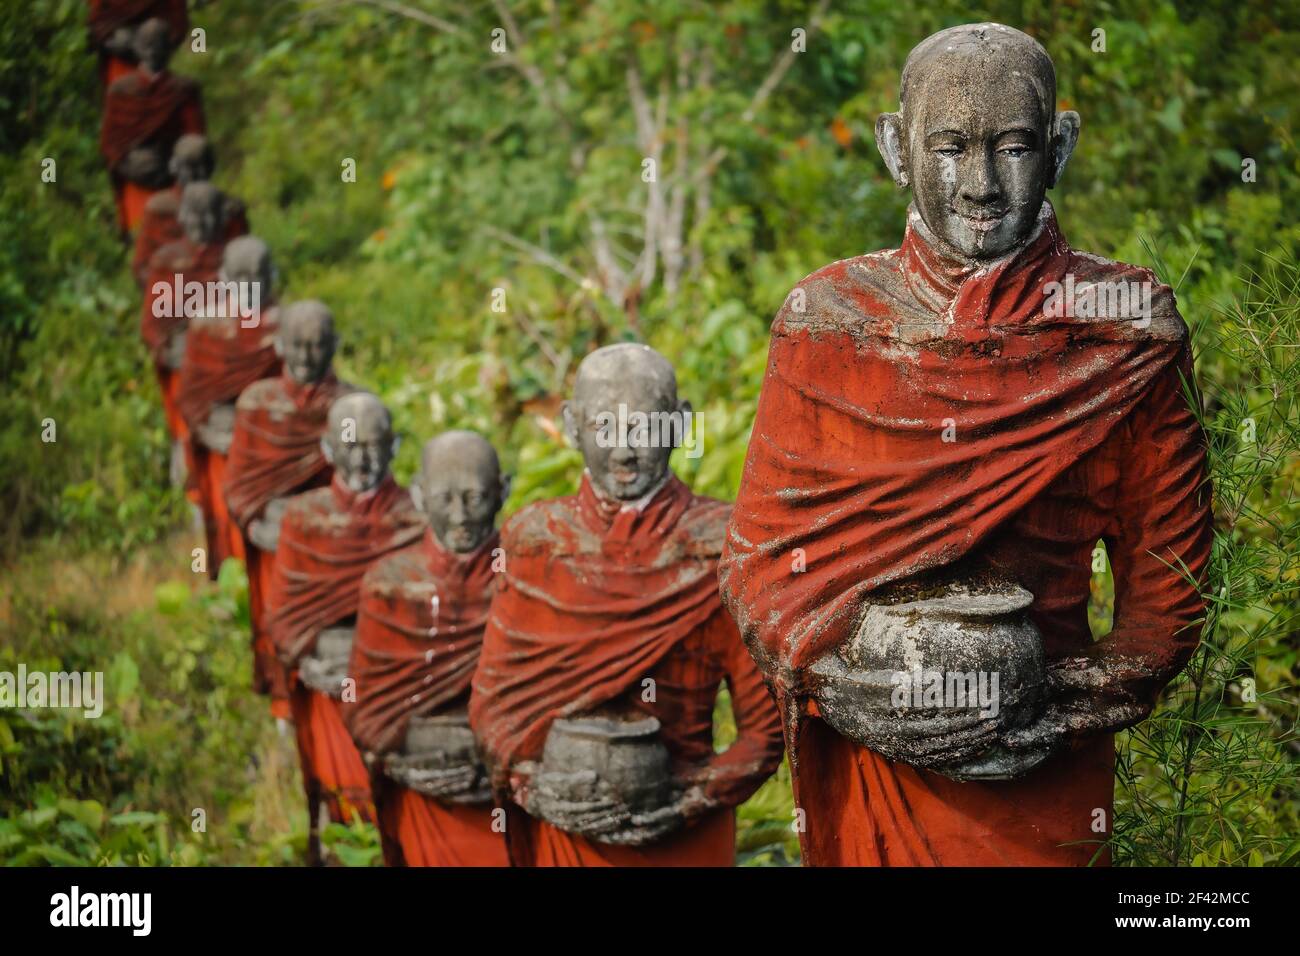 Des centaines de vieilles statues de moines bouddhistes collectant des almes entourent le Bouddha Win Sein Taw ya à Mawlamyine, au Myanmar (Birmanie). Banque D'Images